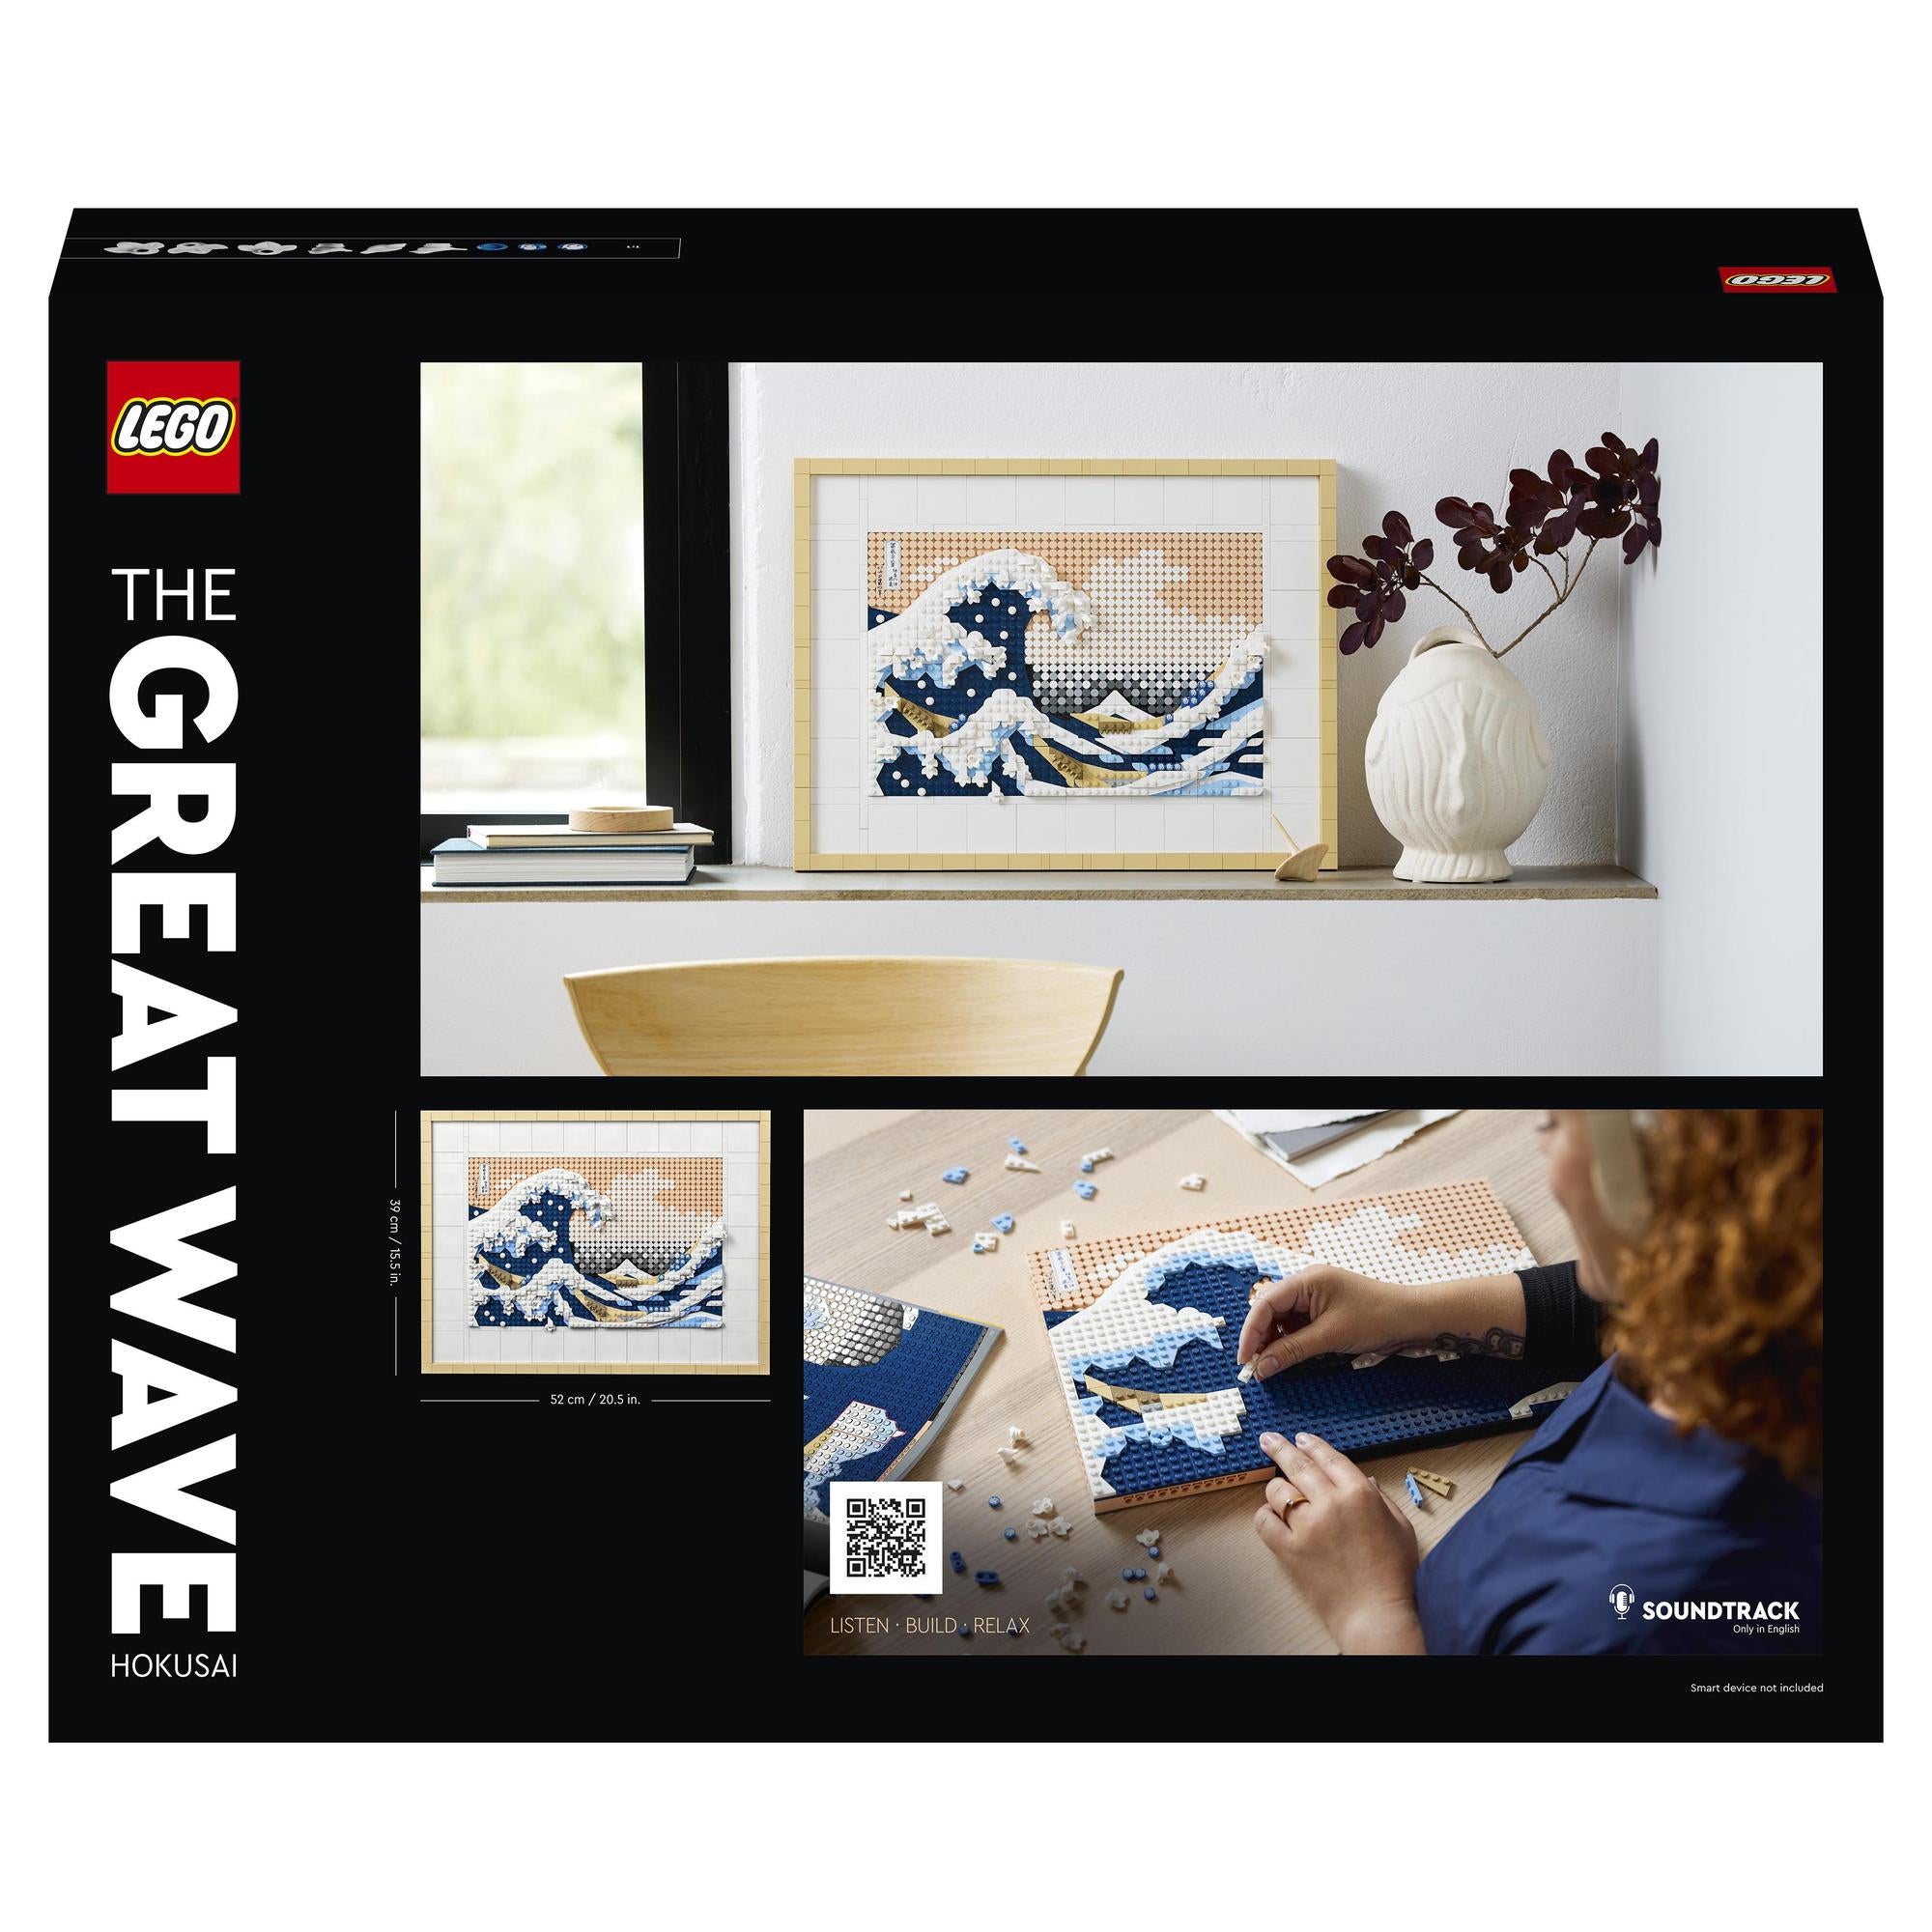 LEGO® | 31208 | Hokusai – Große Welle